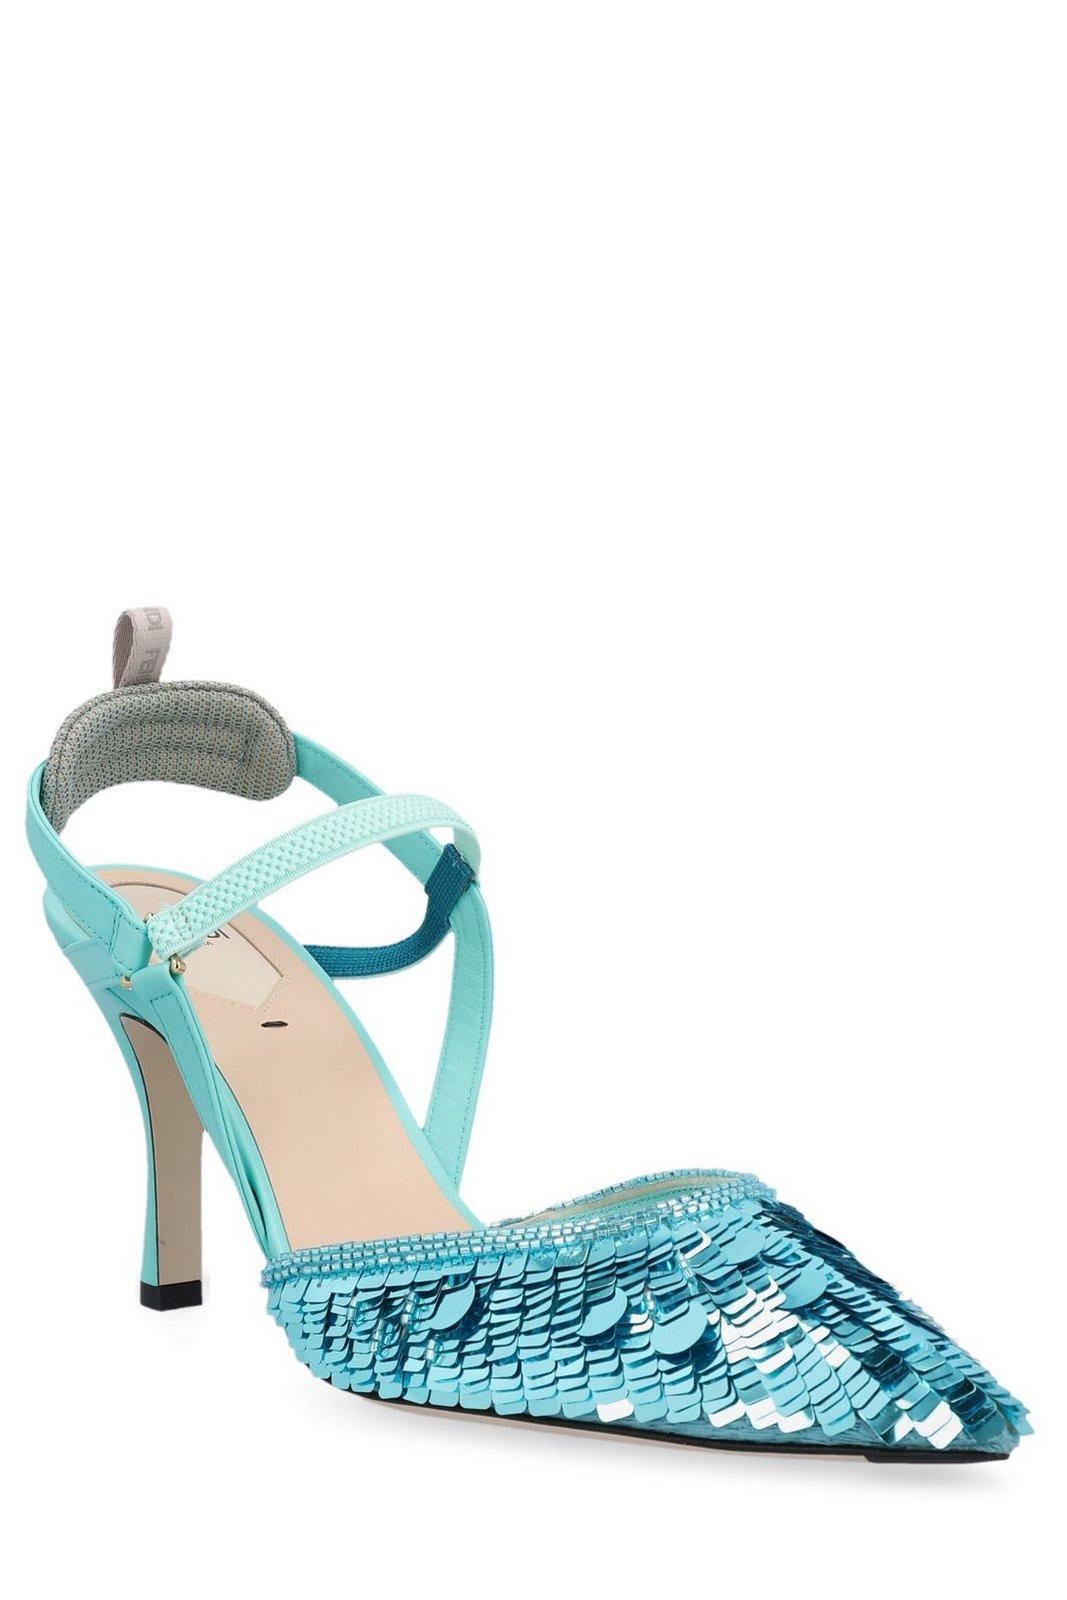 Shop Fendi Sequin-embellished High-heeled Slingback Pumps In Azure